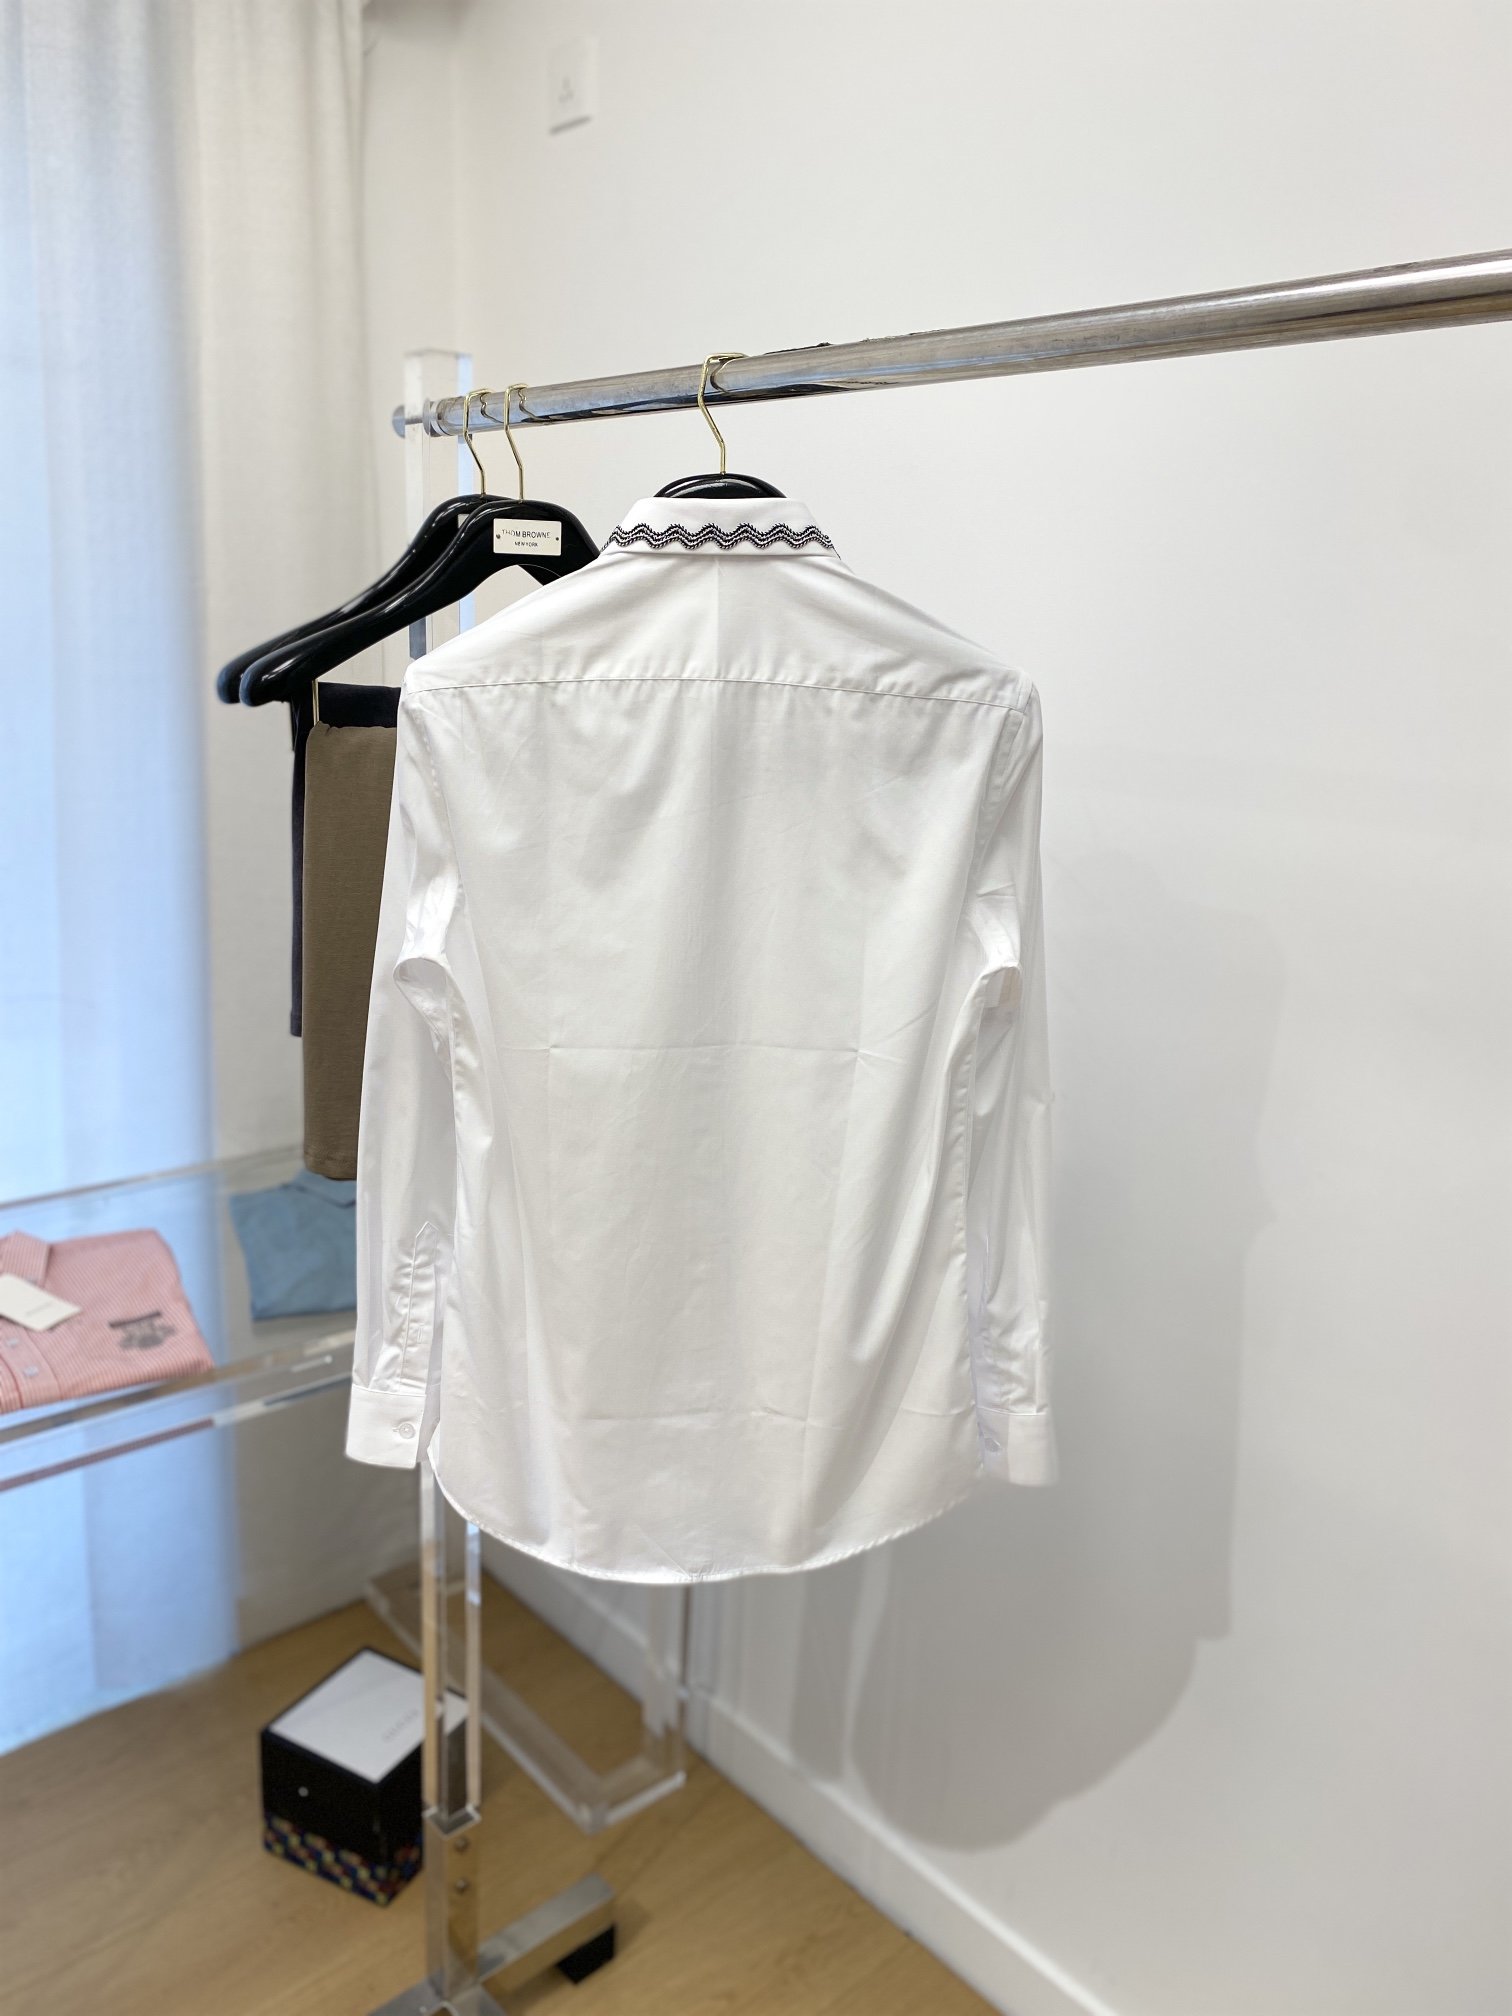 普拉达2024新款衬衫打造时装艺术感立体剪裁修身版型上身效果很帅气微彰显品位整体细节可以对比效果非常有型